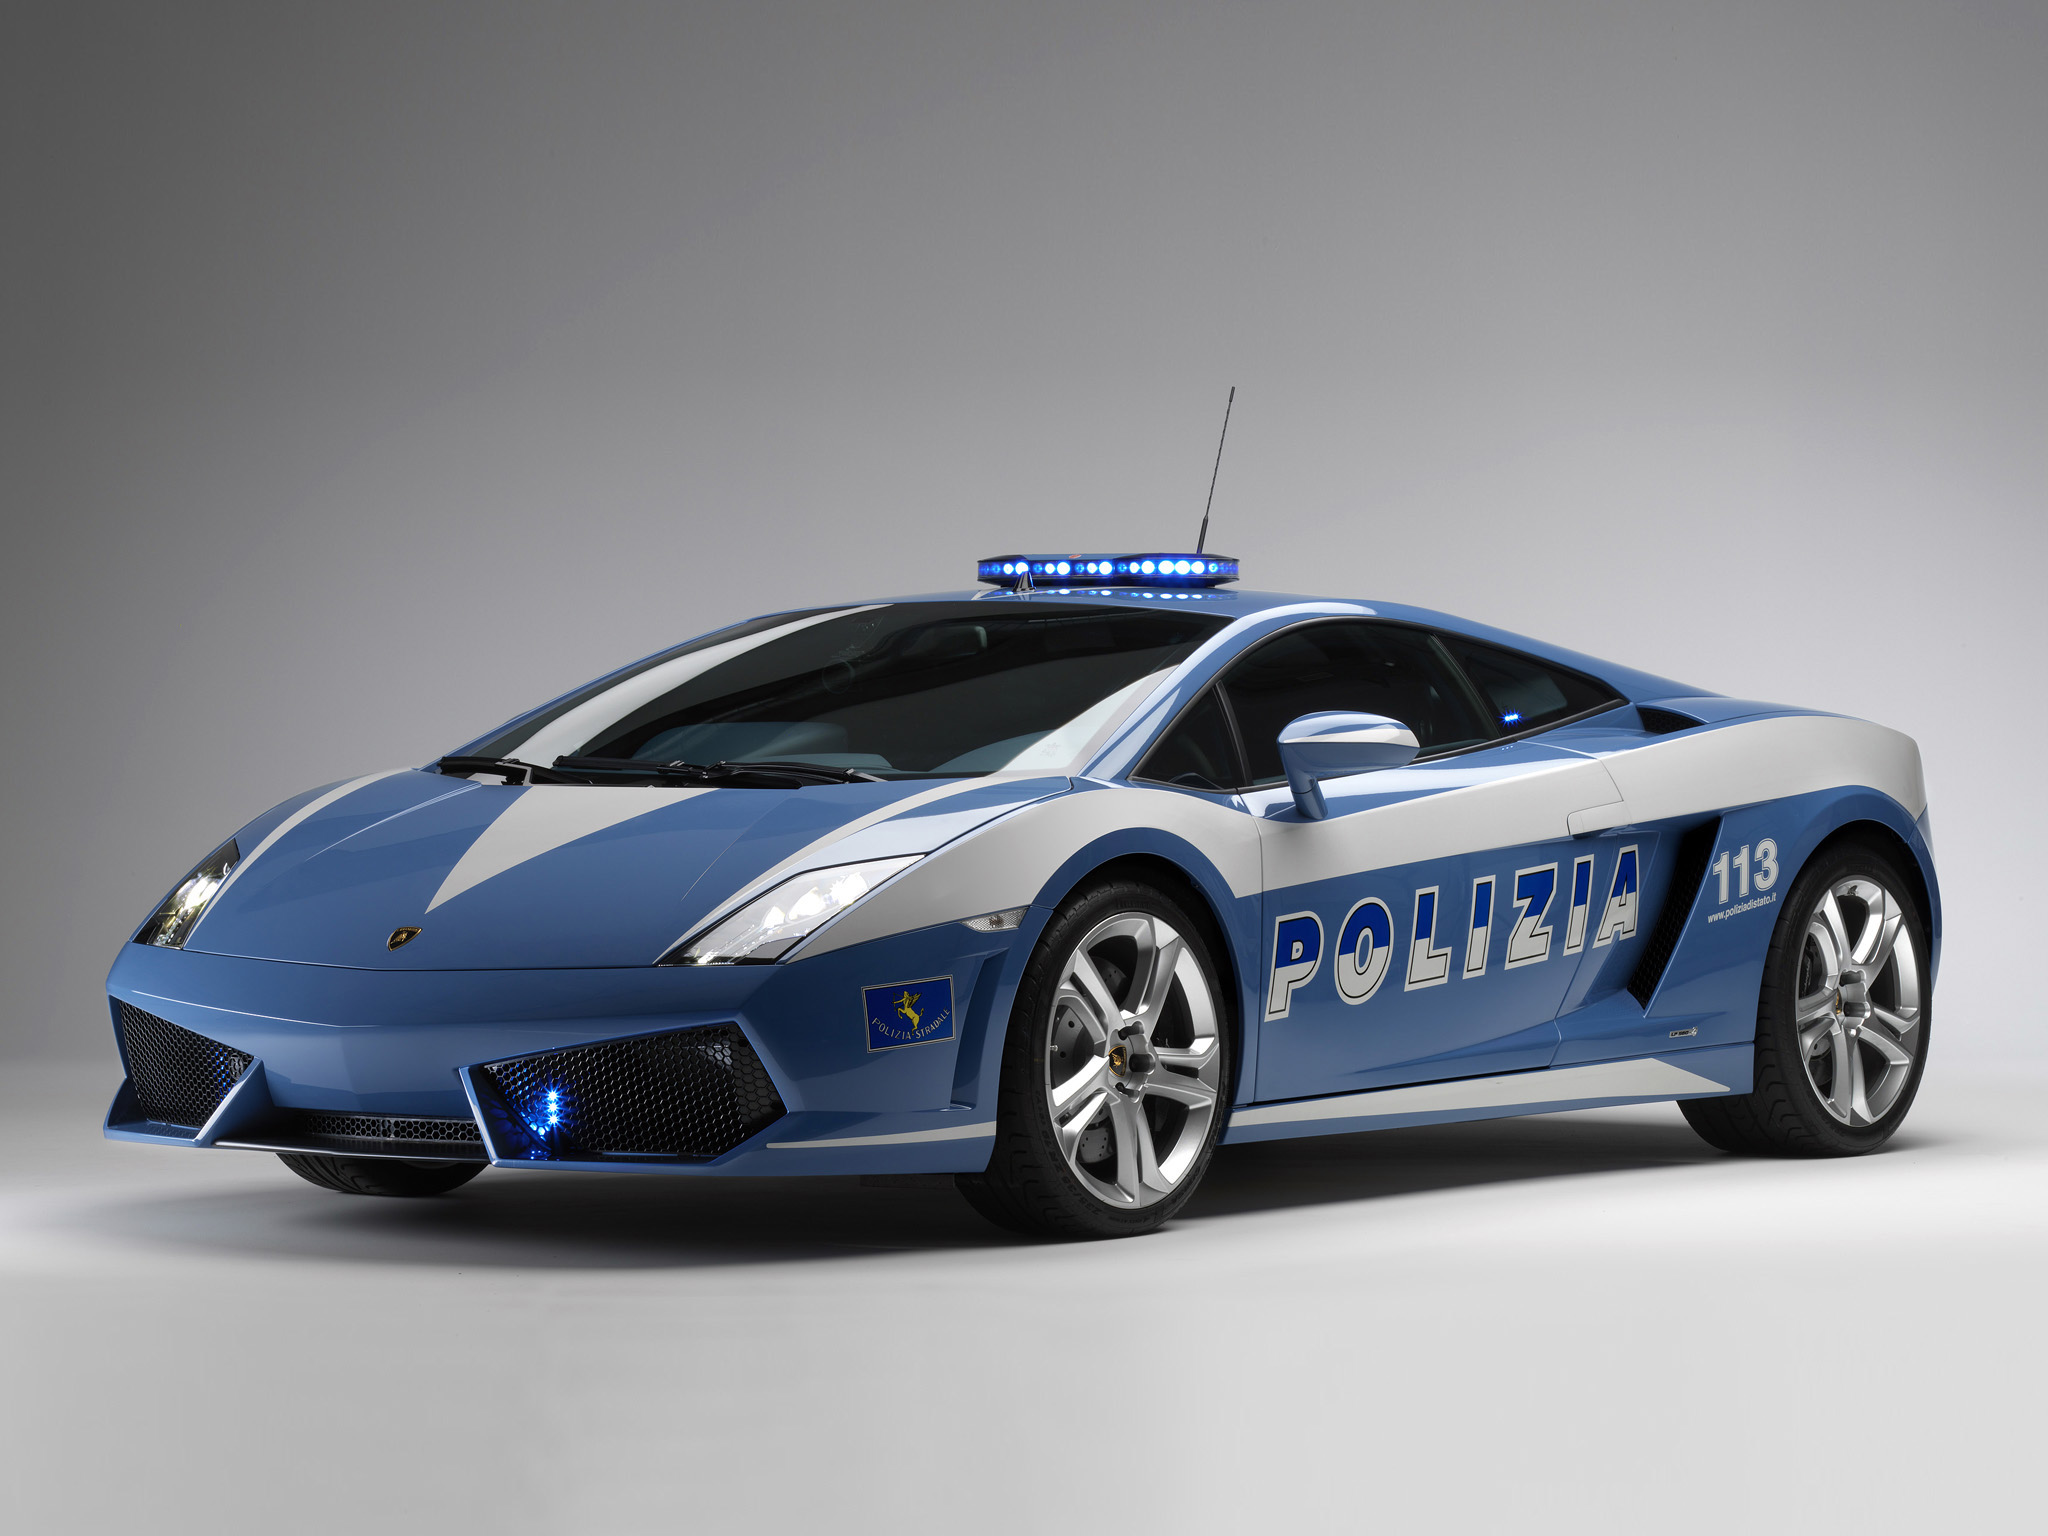 Gallardo Police Picture Lamborghini Photo Gallery